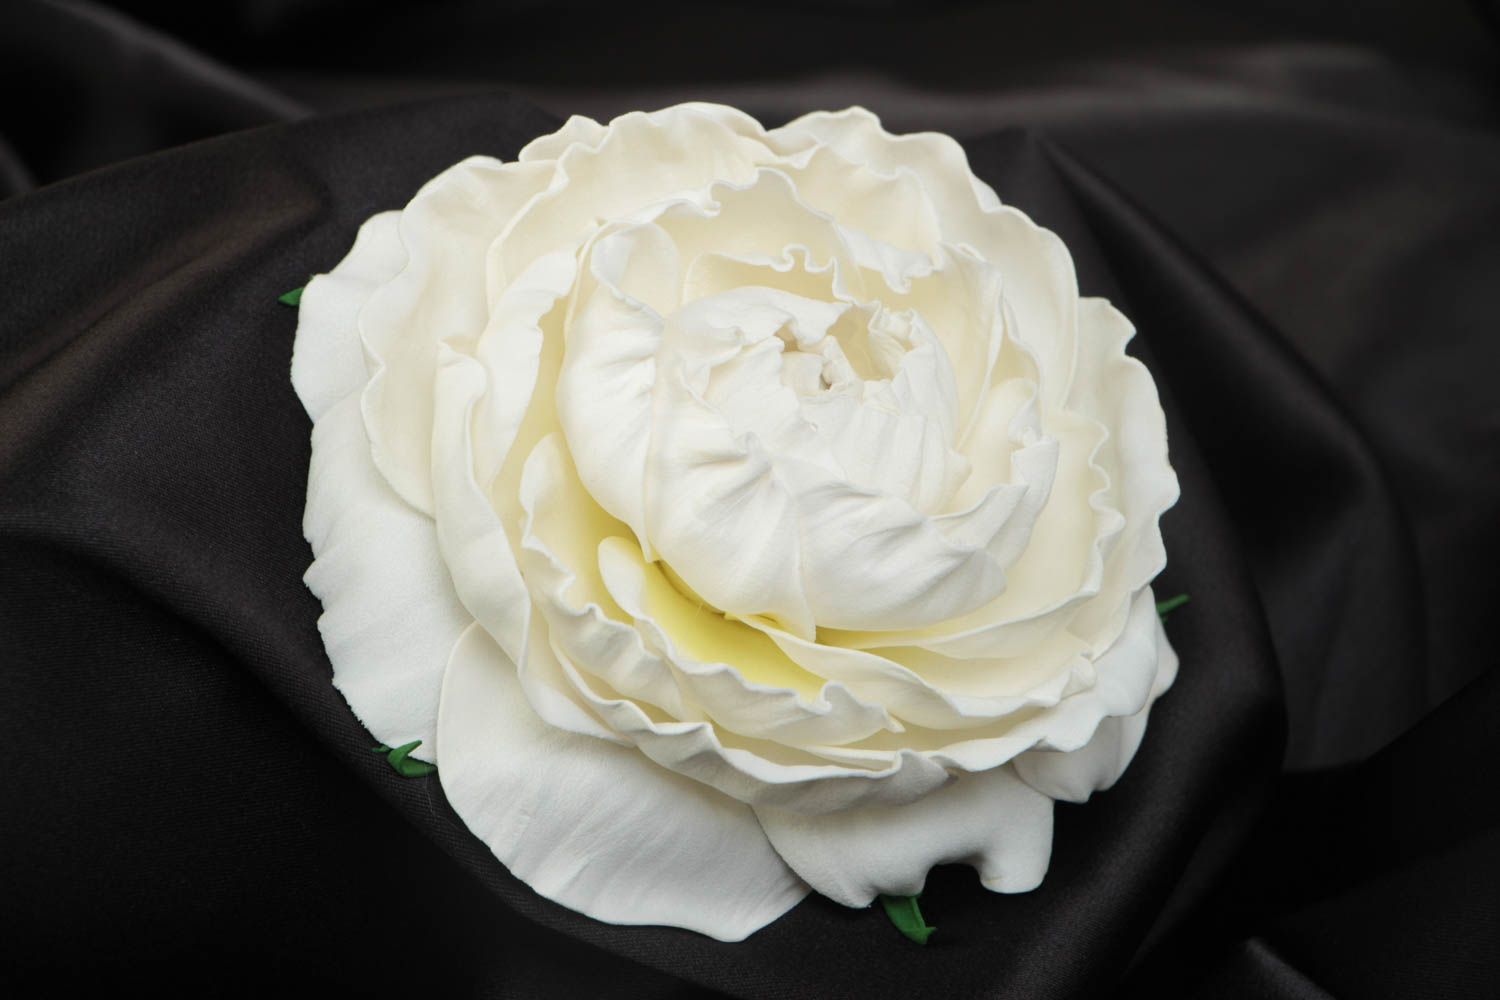 Объемная заготовка под брошь в виде цветка из фоамирана белая роза ручной работы фото 1